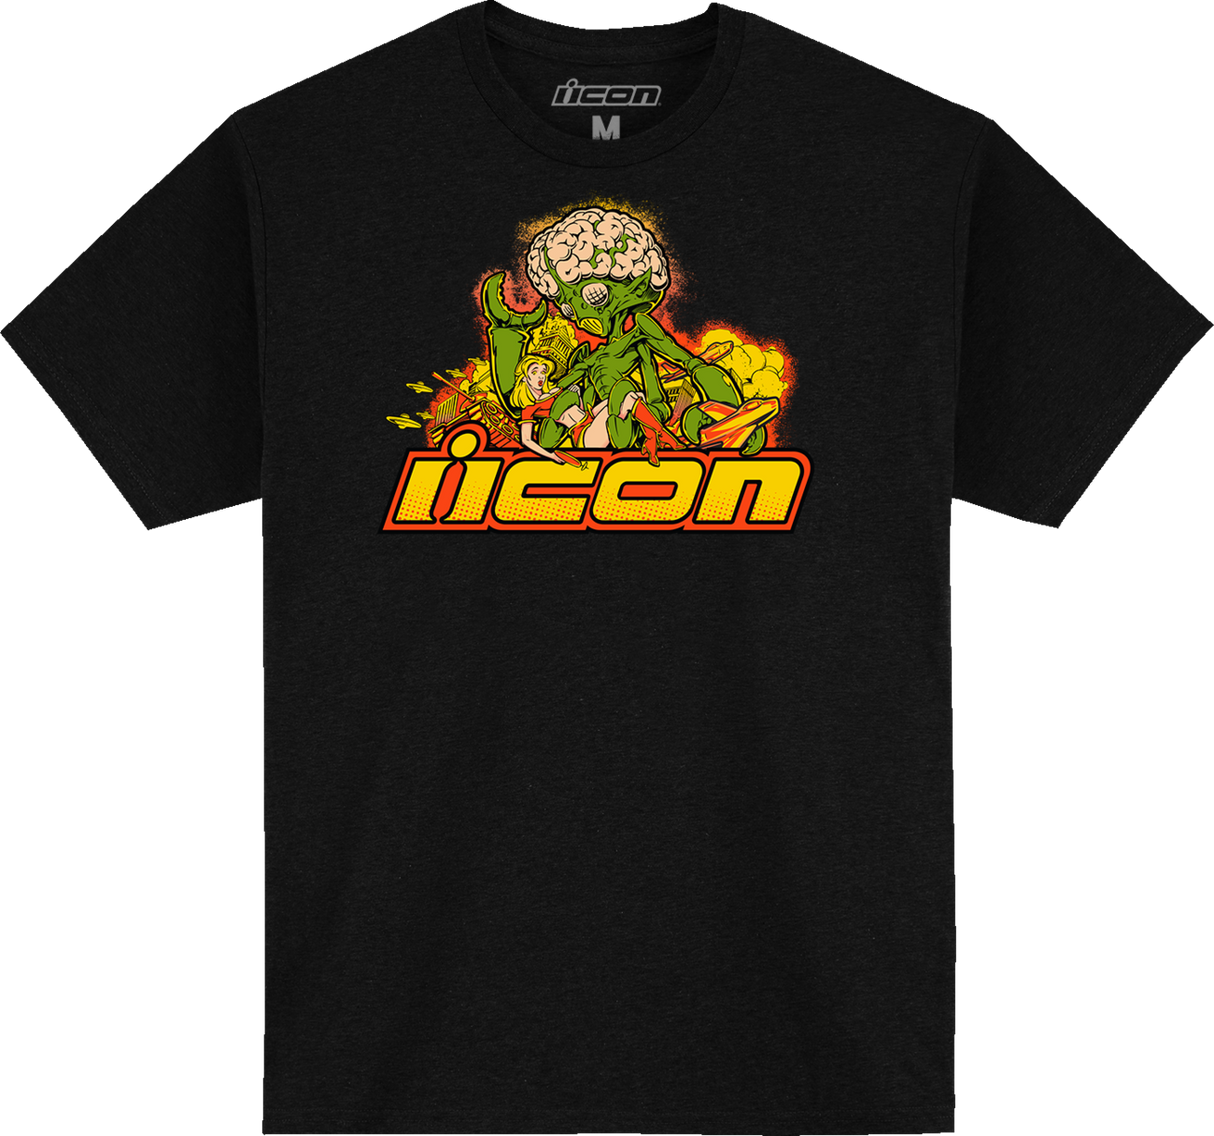 ICON Bugoid Blitz T-Shirt - Black - Medium 303023652